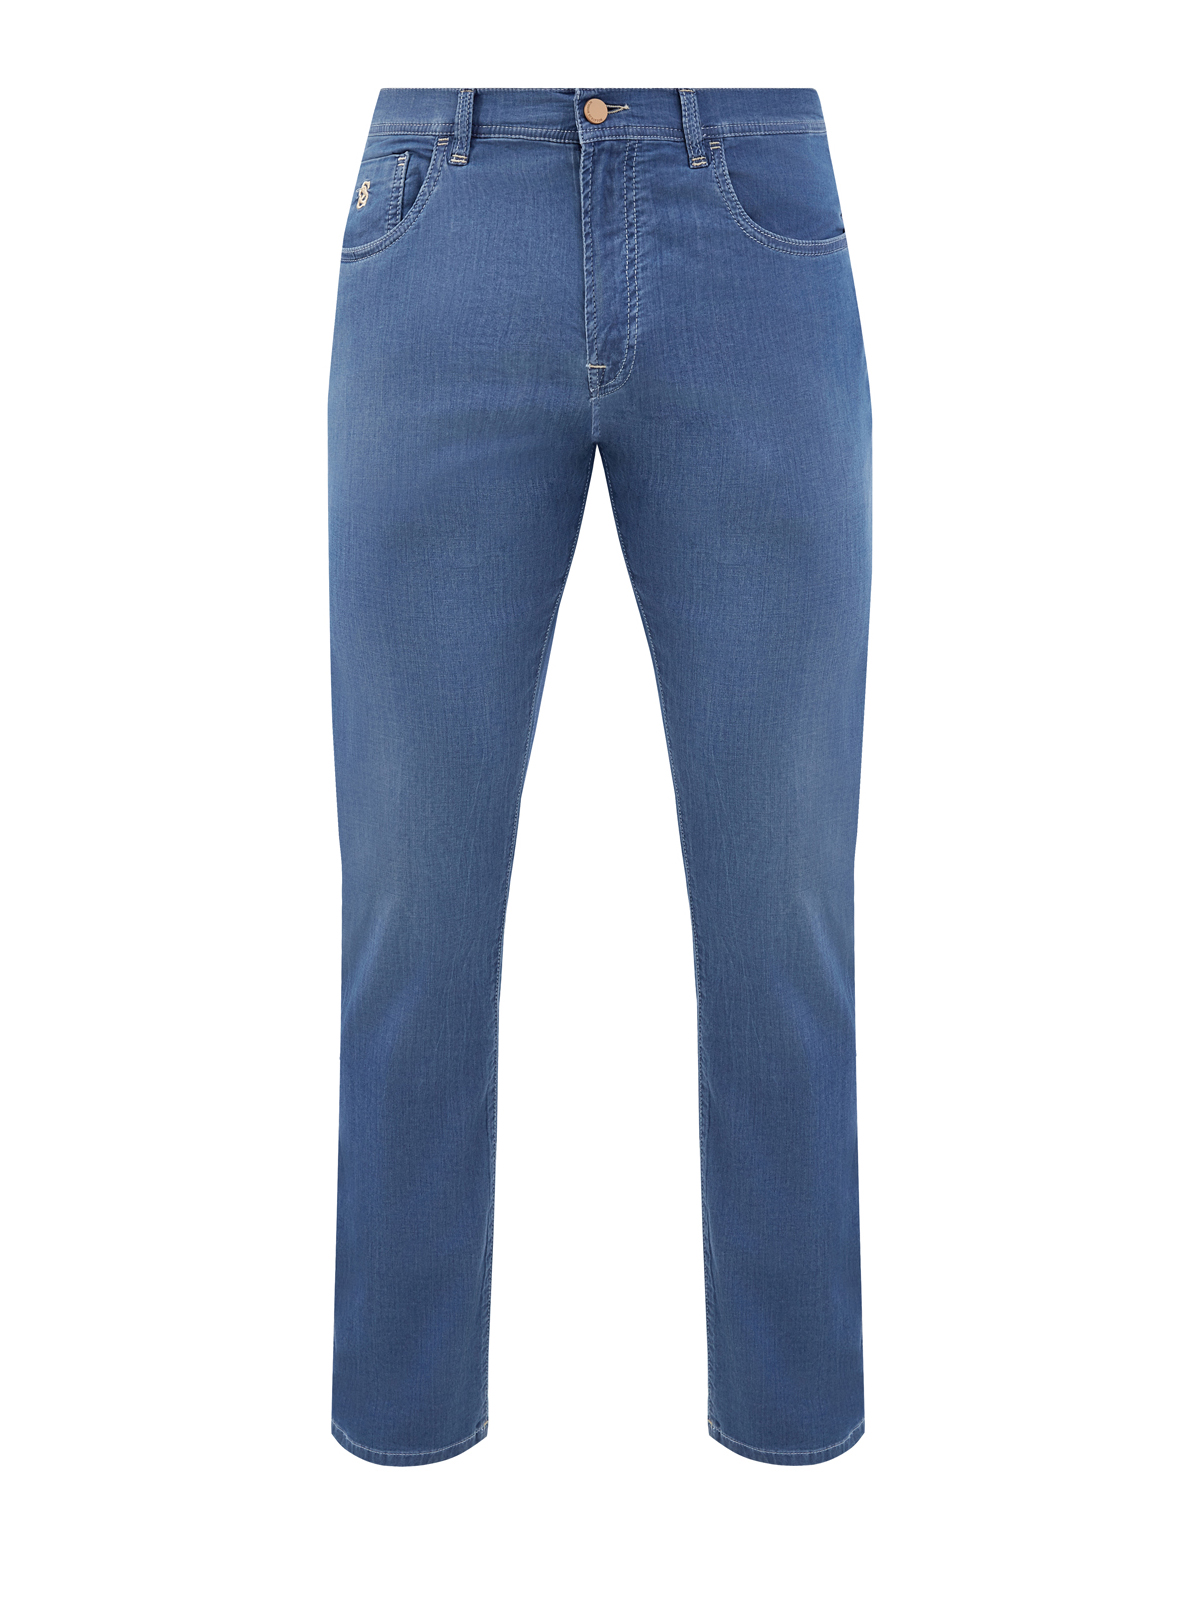 Окрашенные вручную джинсы Cesare из японского денима SCISSOR SCRIPTOR синего цвета